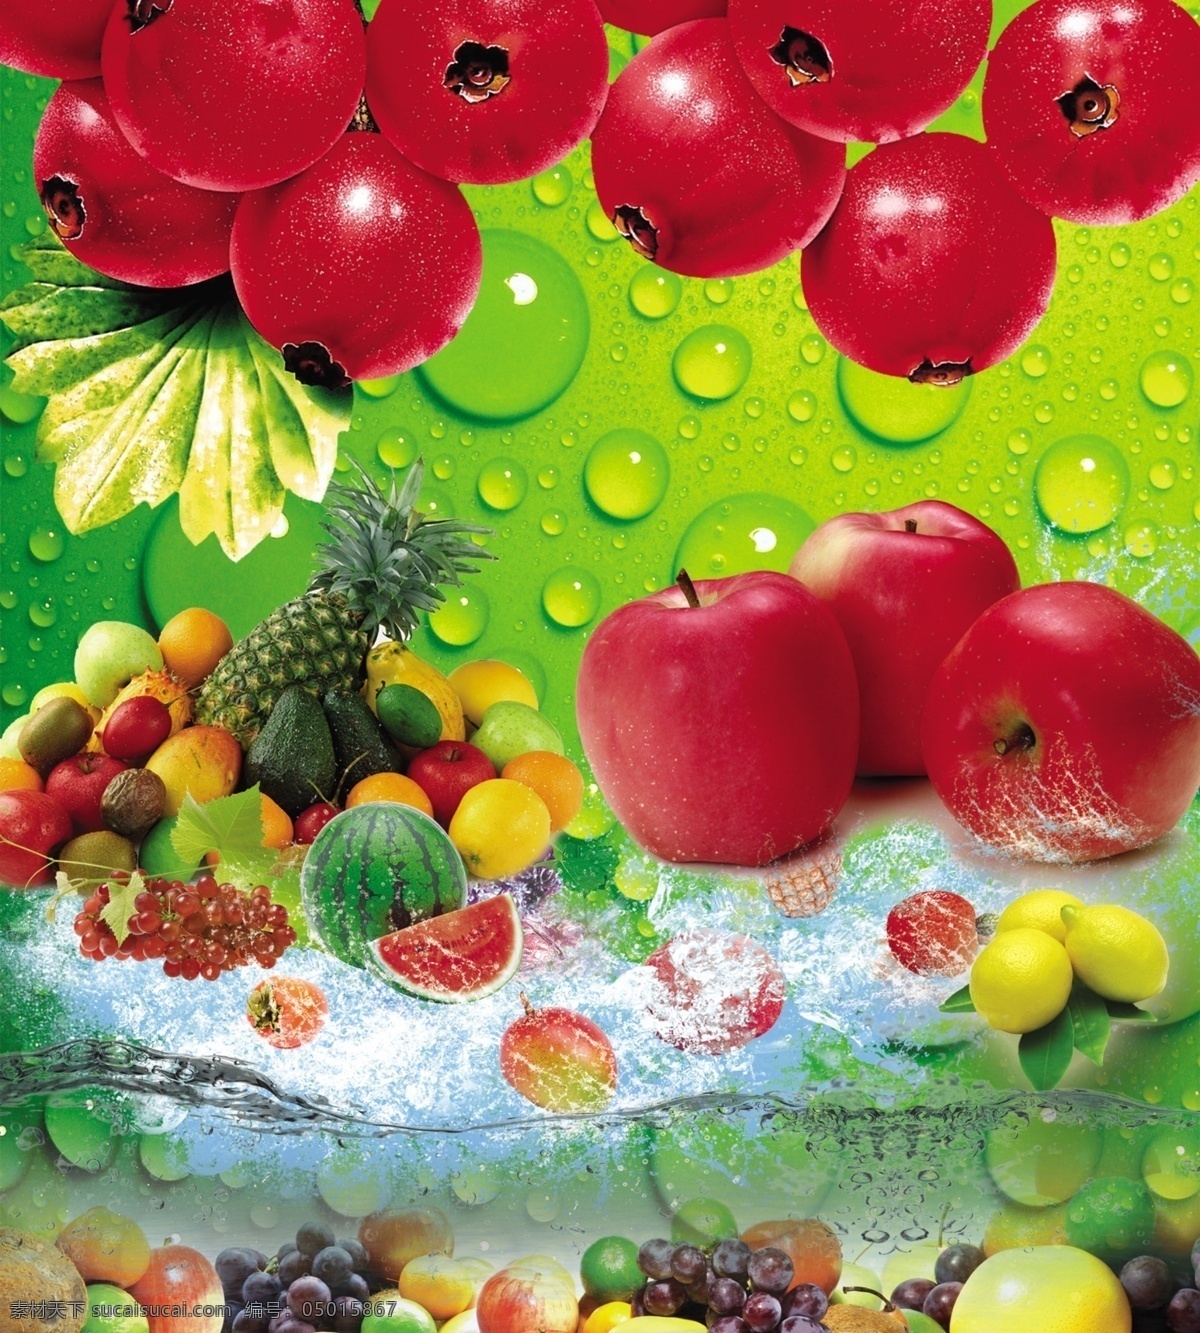 水果 各种 夏日 冰凉 苹果 西瓜 模版下载 夏日冰凉 西瓜模板下载 各种水果 西瓜图片下载 菠萝 山楂 水波纹